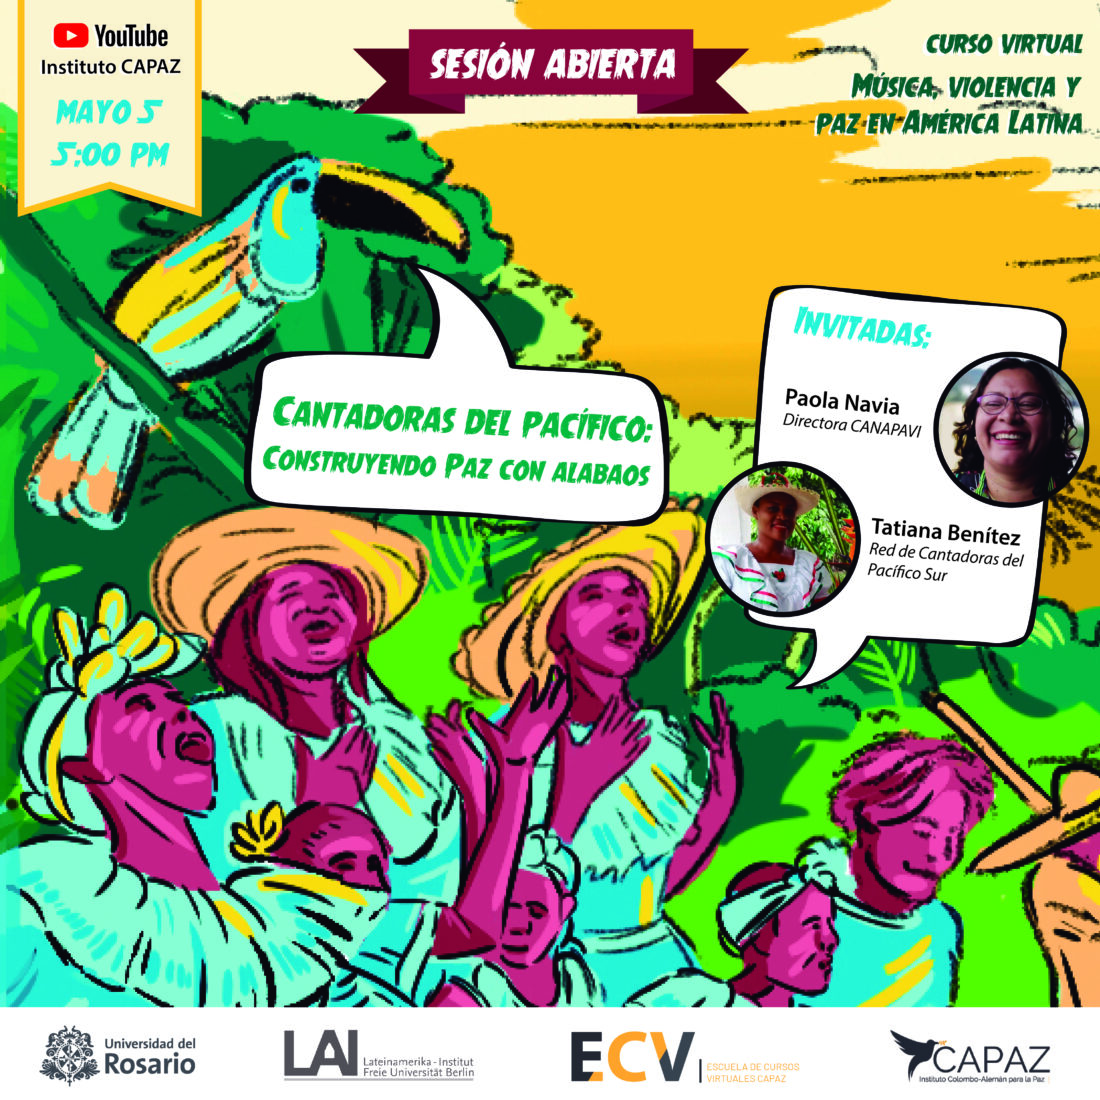 El curso música, violencia y paz en América Latina es uno de los cursos gratuitos de la ECV - Escuela de Cursos Virtuales CAPAZ.